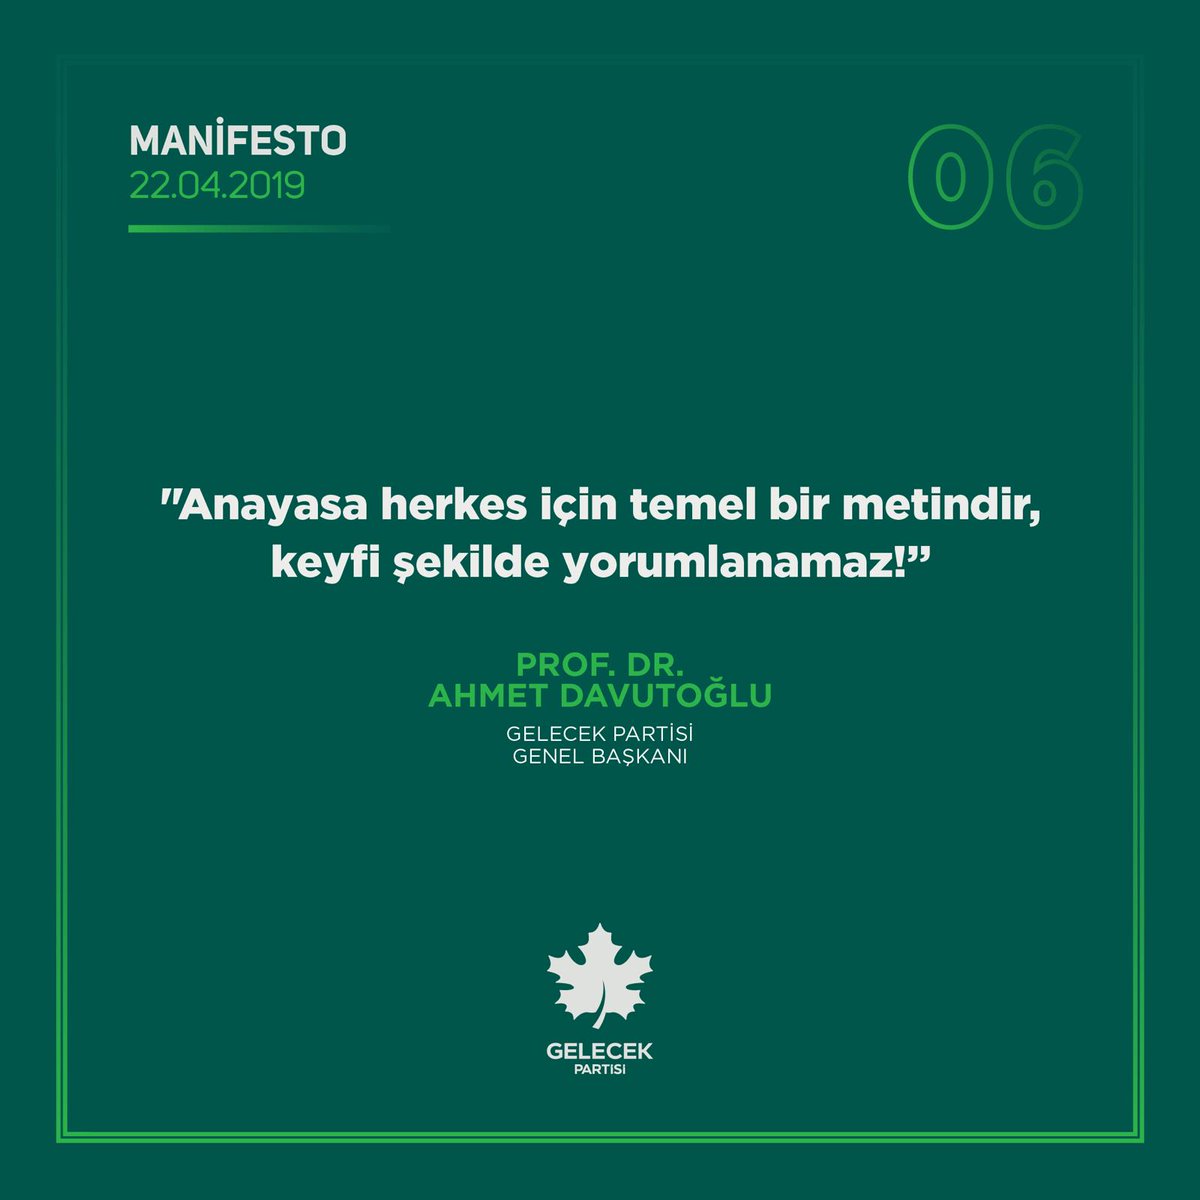 Hele ki ilk dört ve 66 maddeleri birleşecek düzenlenecek daha kapsayıcı olacak gibi algı ile birilerinin keyfi veya idealleri doğrultusunda değiştirilemez 
#AhmetDavutoğlu
#Manifesto